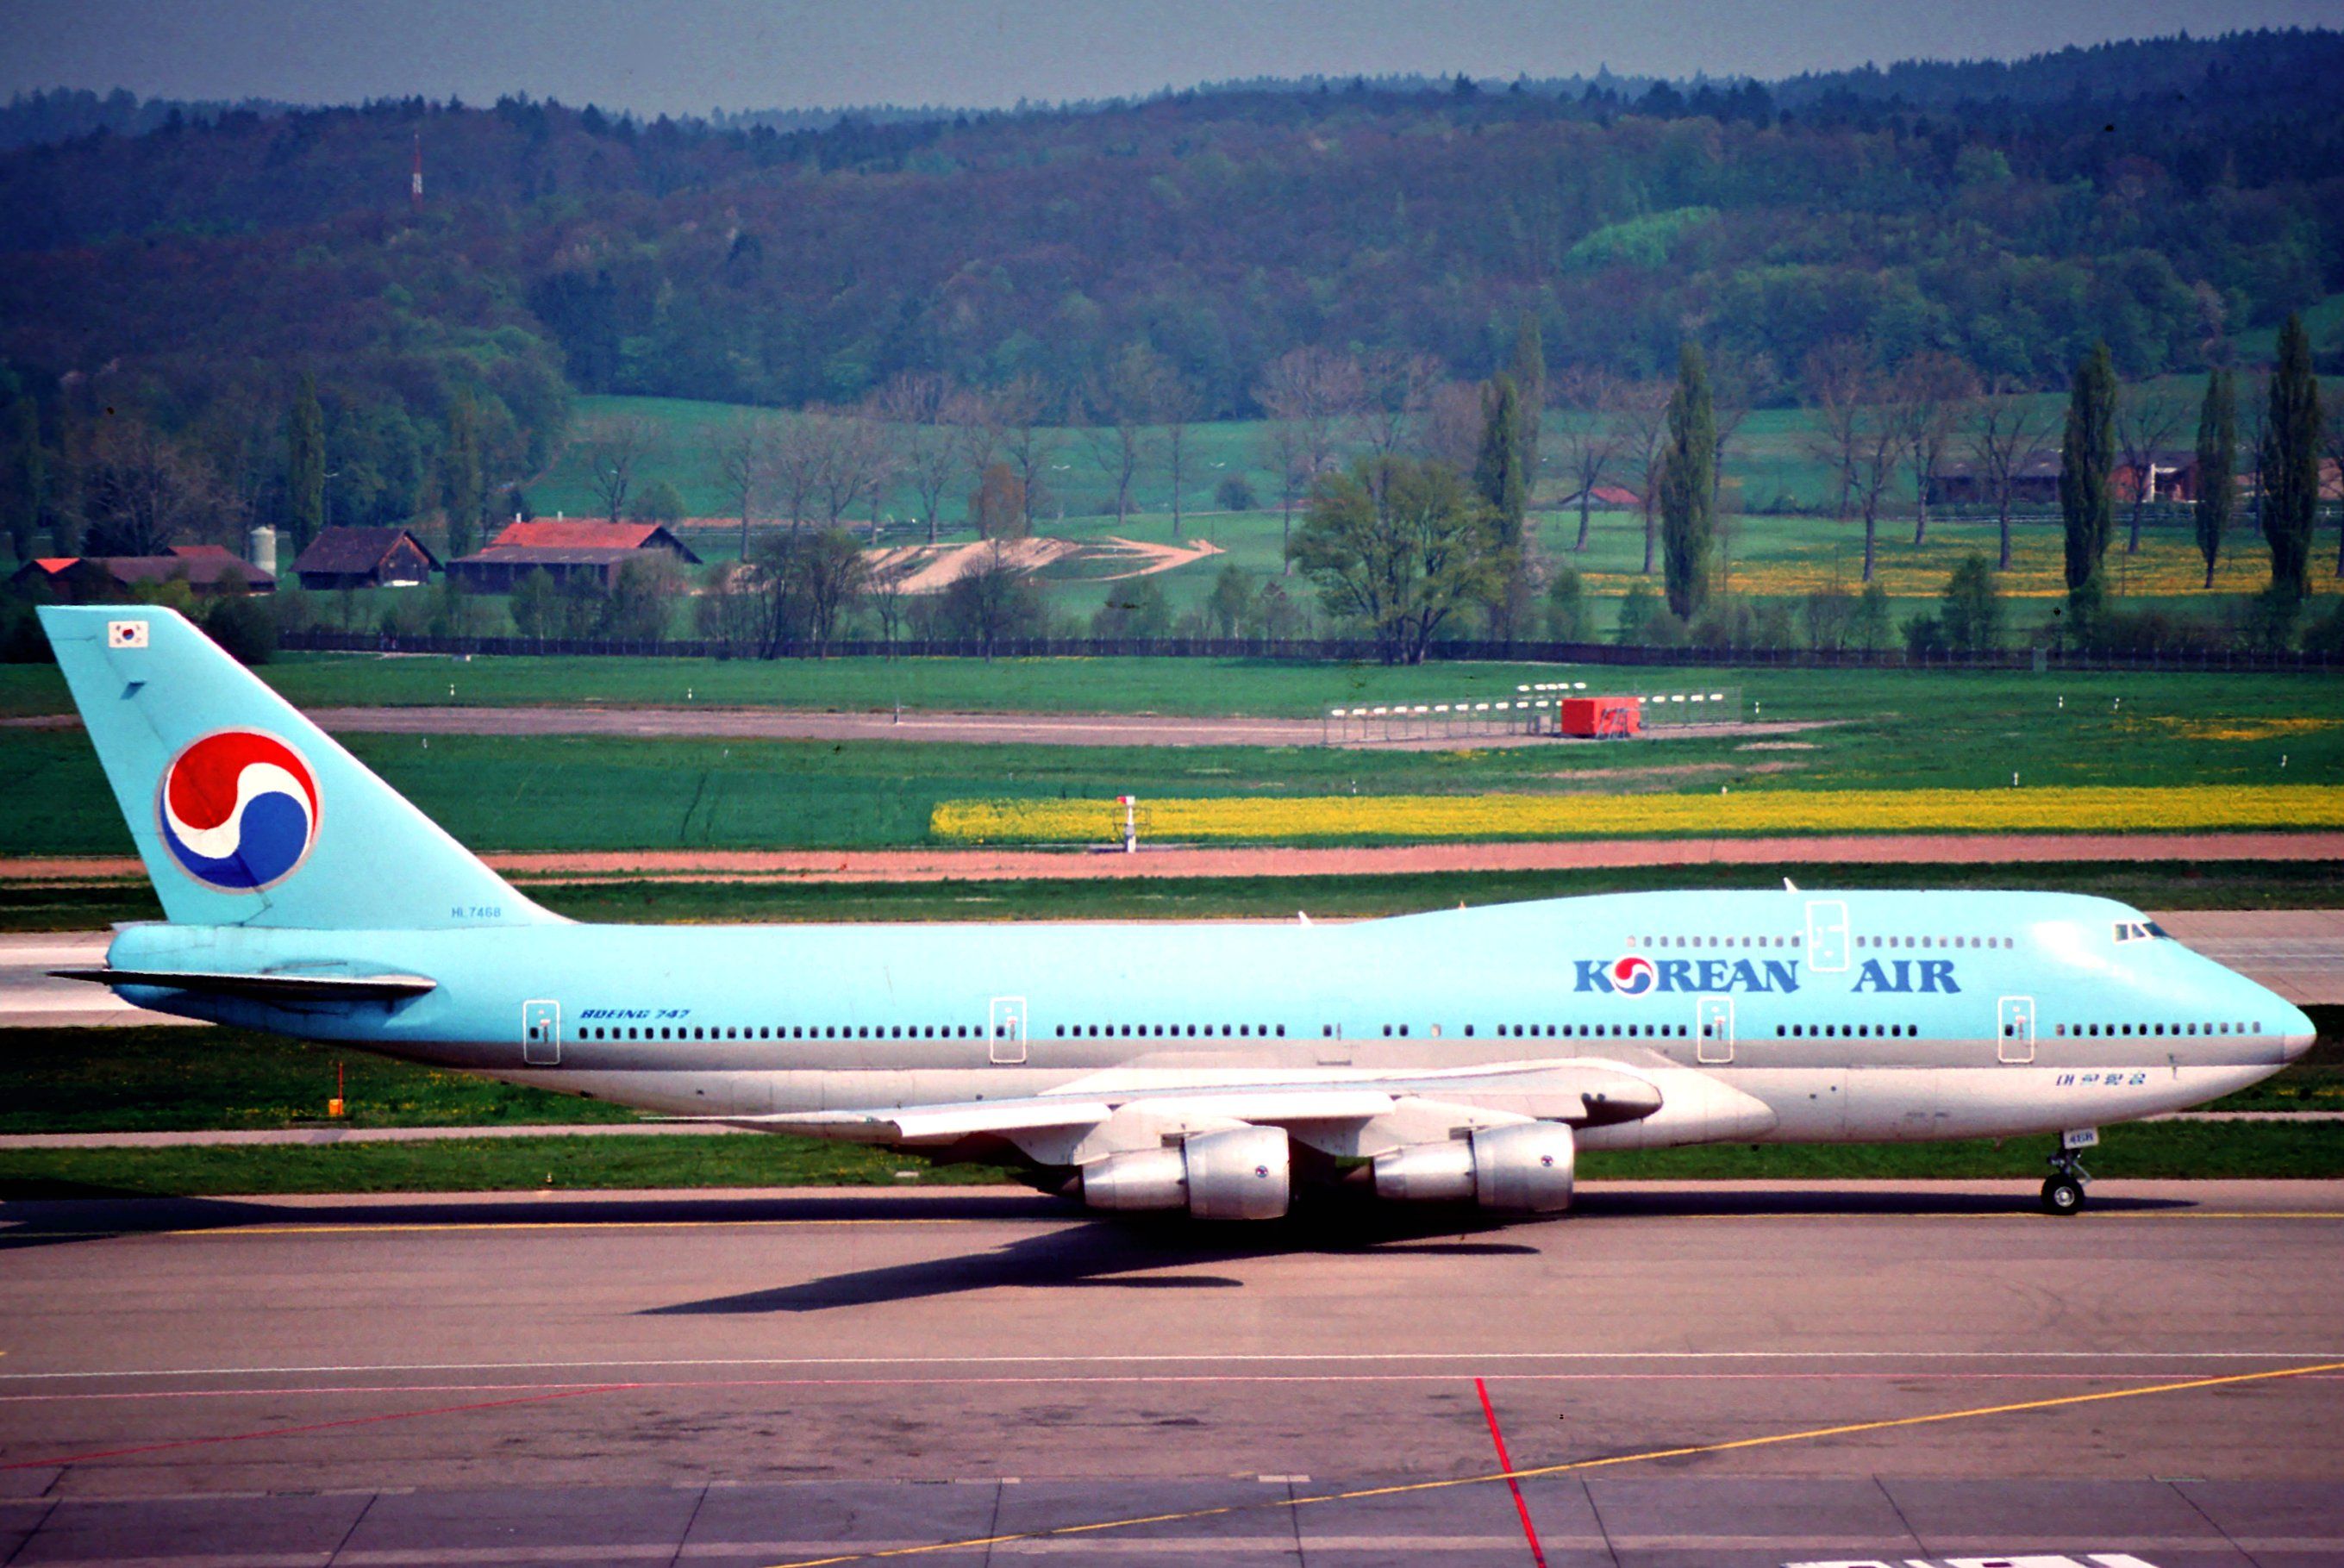 A Korean Air Boeing 747-300 on an airport apron.